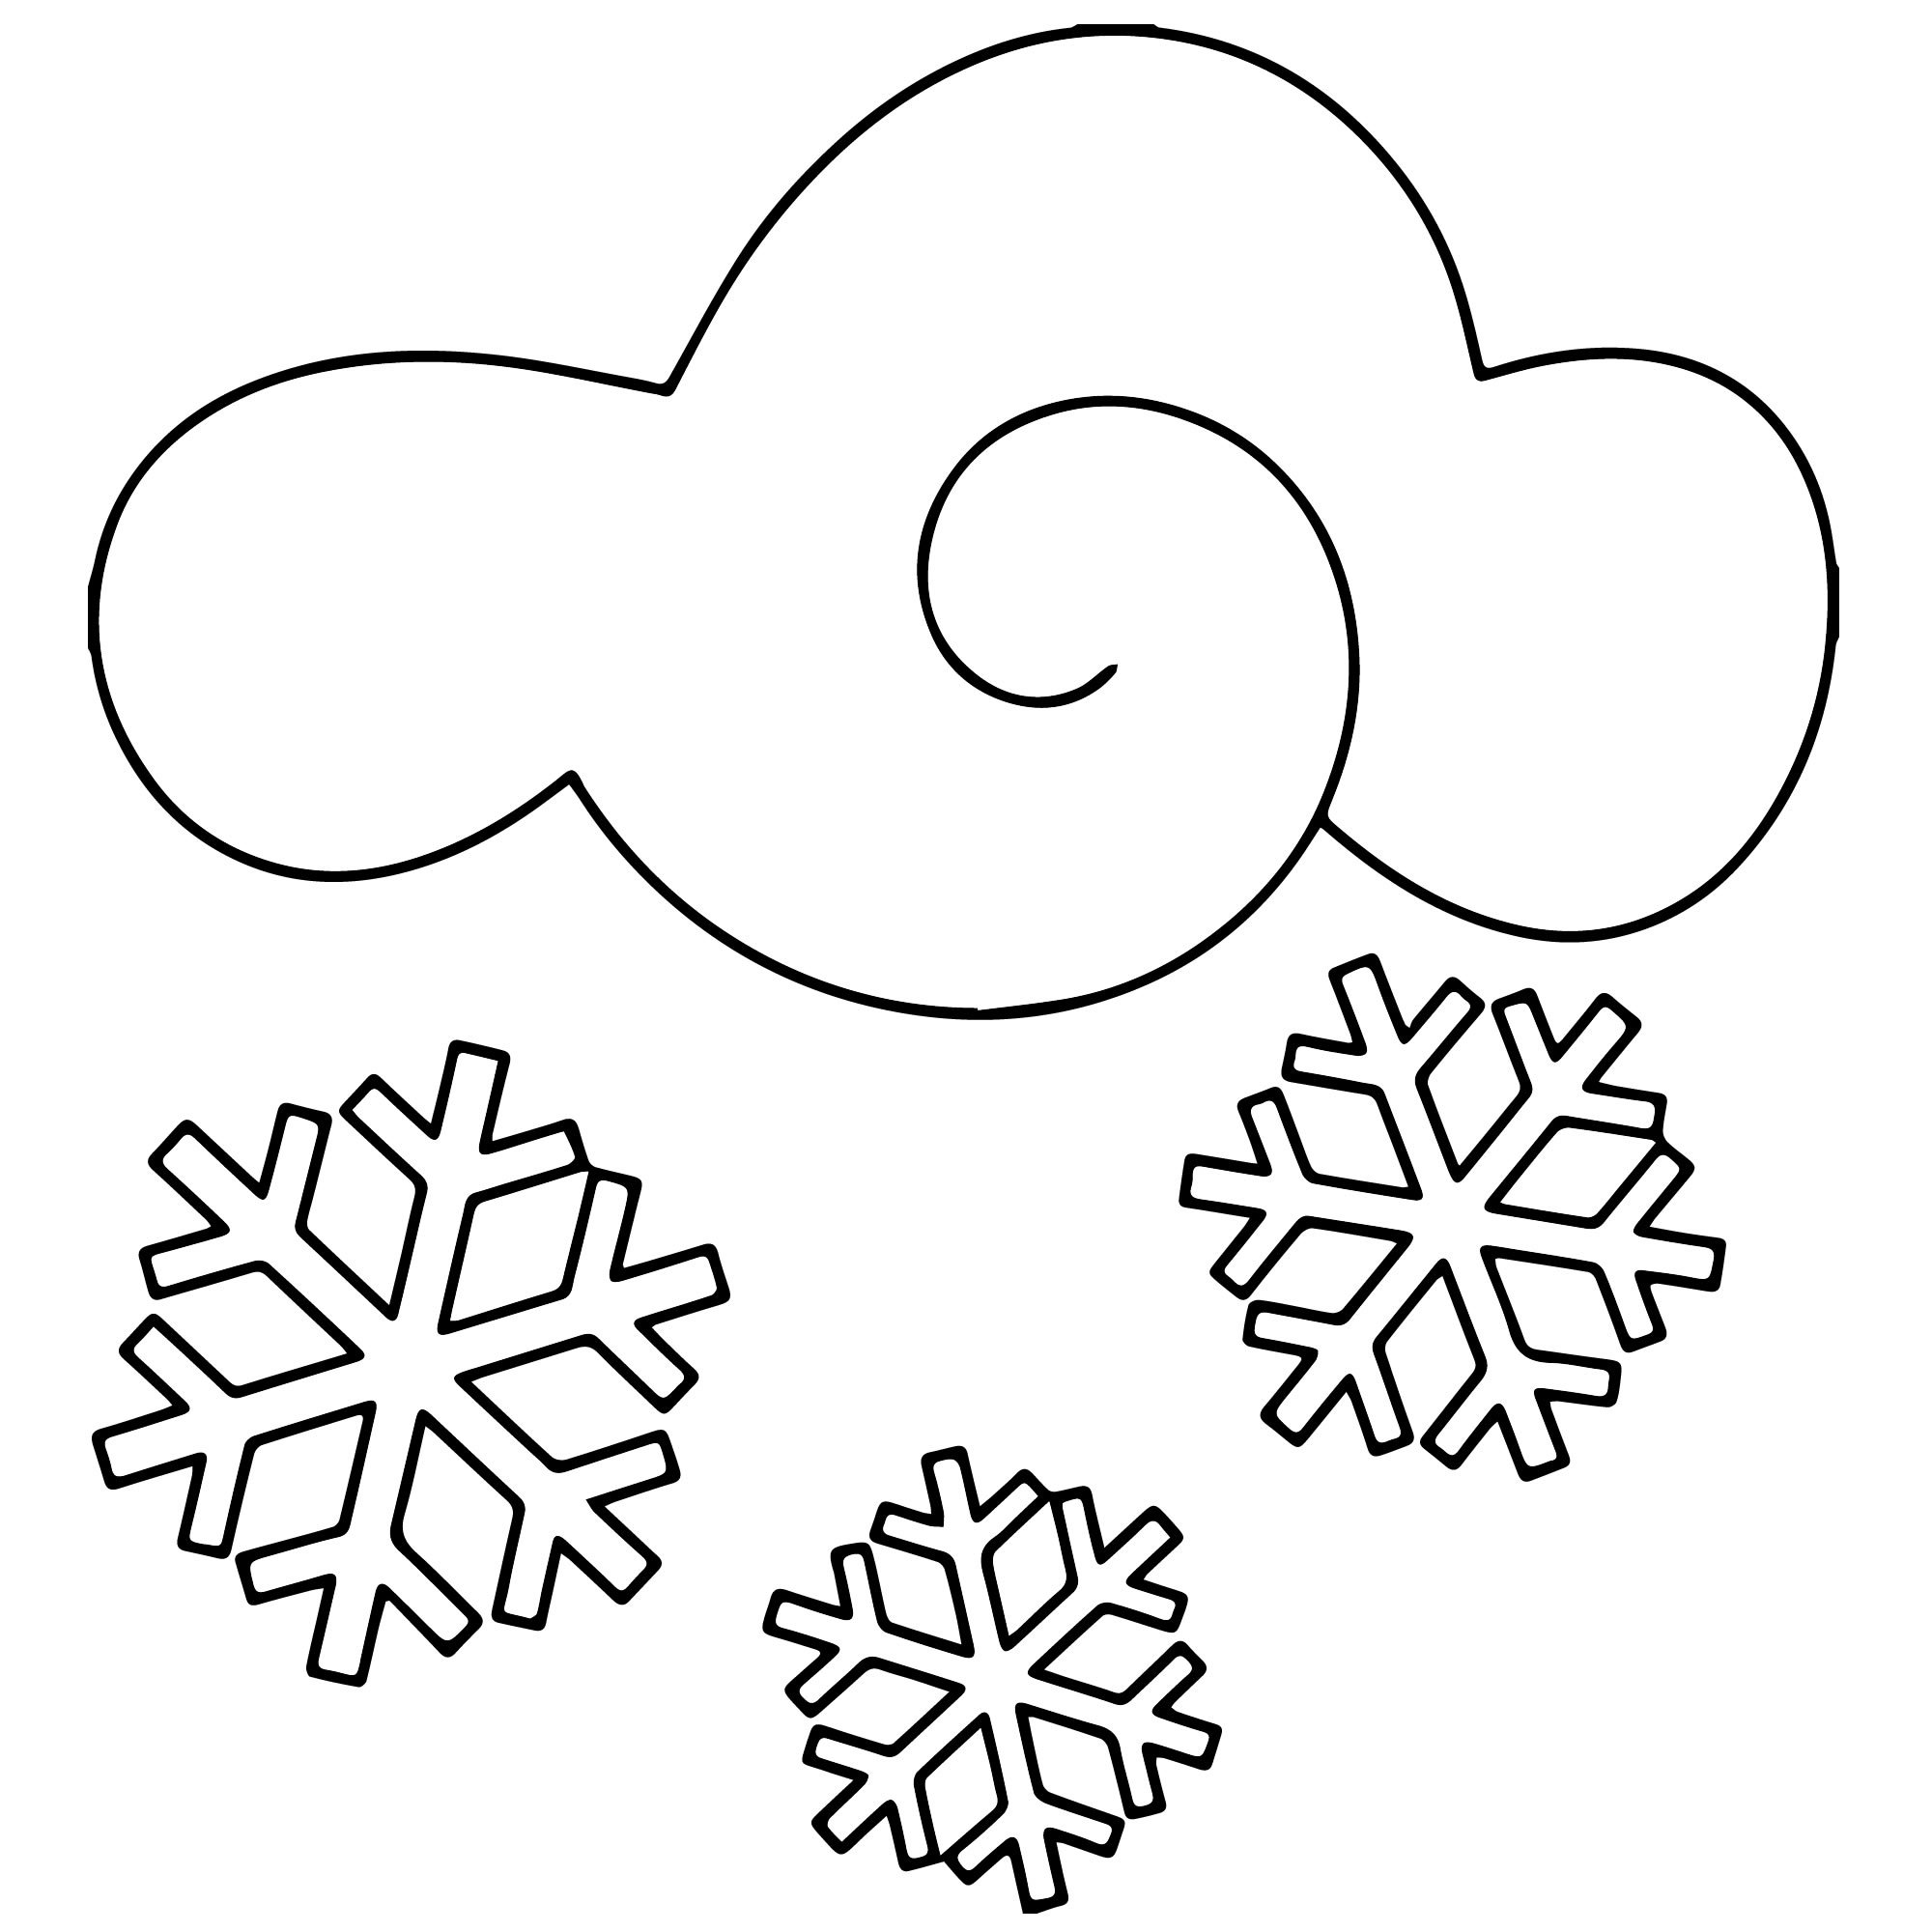 Раскрасим снег. Снег раскраска. Снег раскраска для детей. Снижинкираскраски для детей. Снежка раскраска.